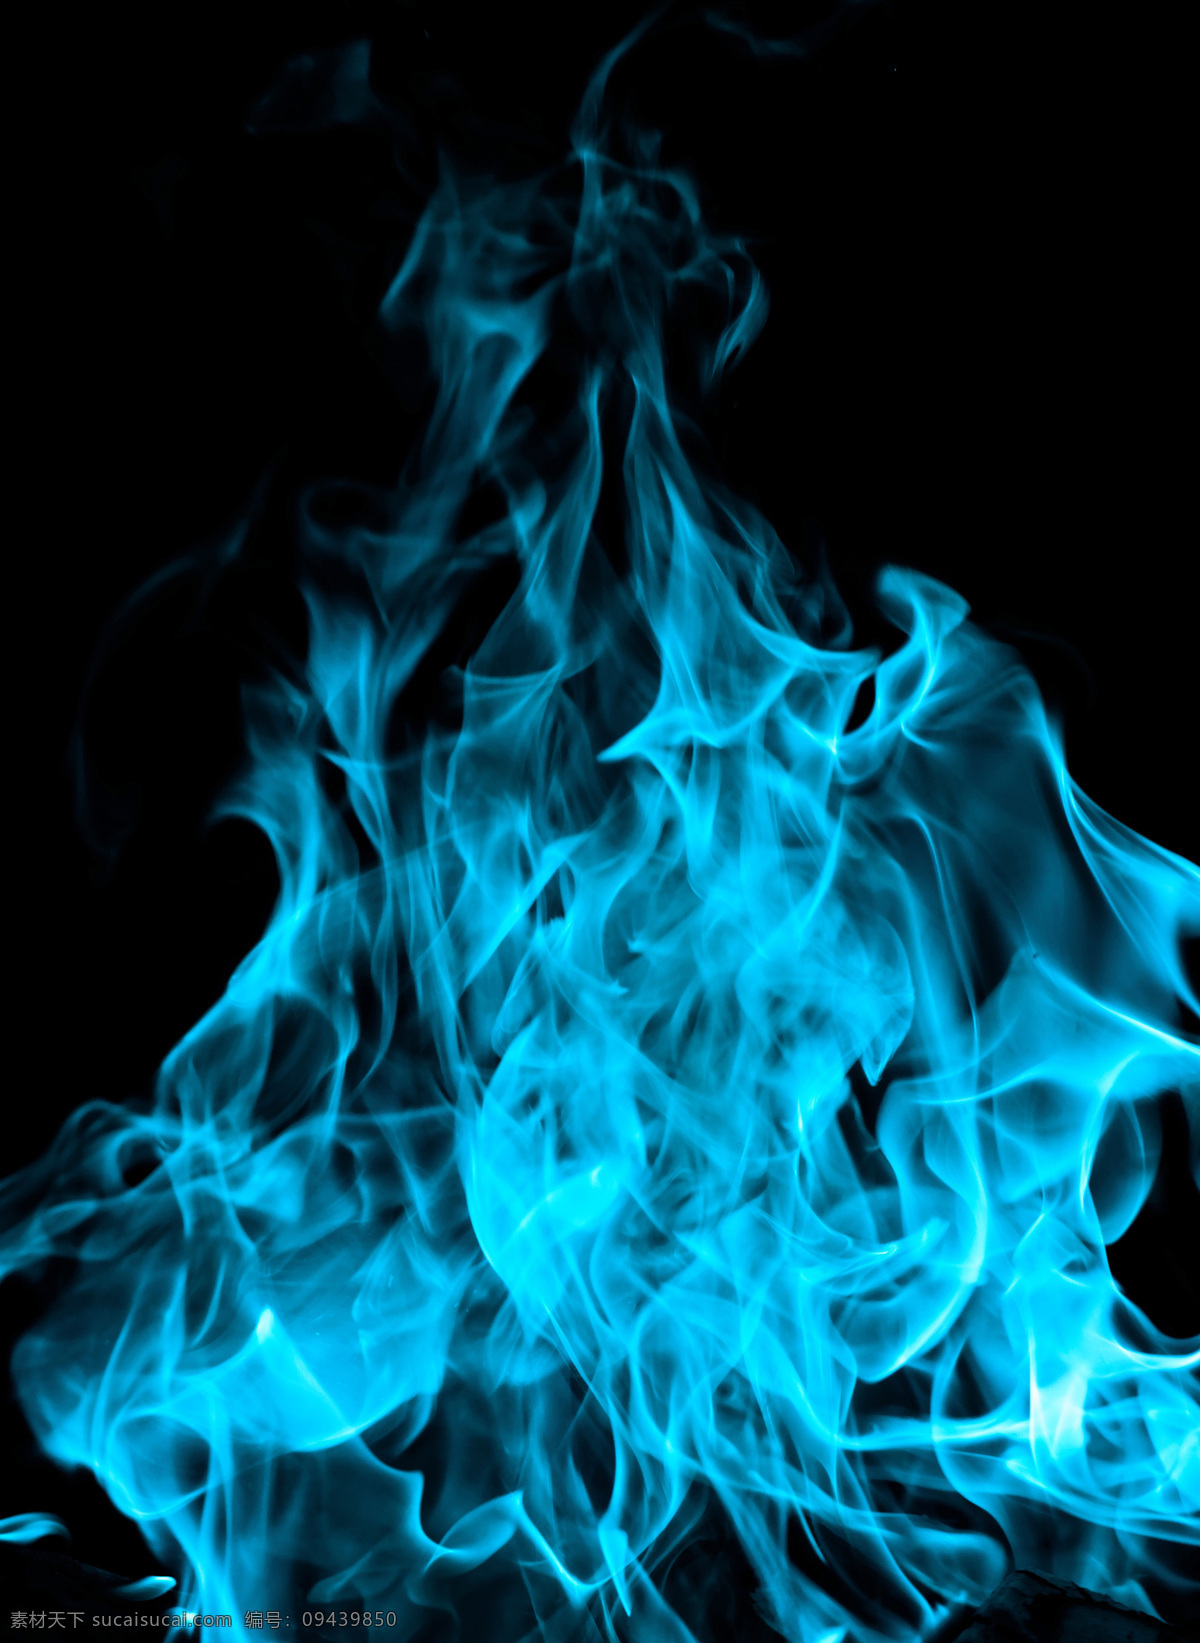 蓝色 火焰 背景 火焰背景 蓝色火焰 燃烧 火苗 火焰图片 生活百科